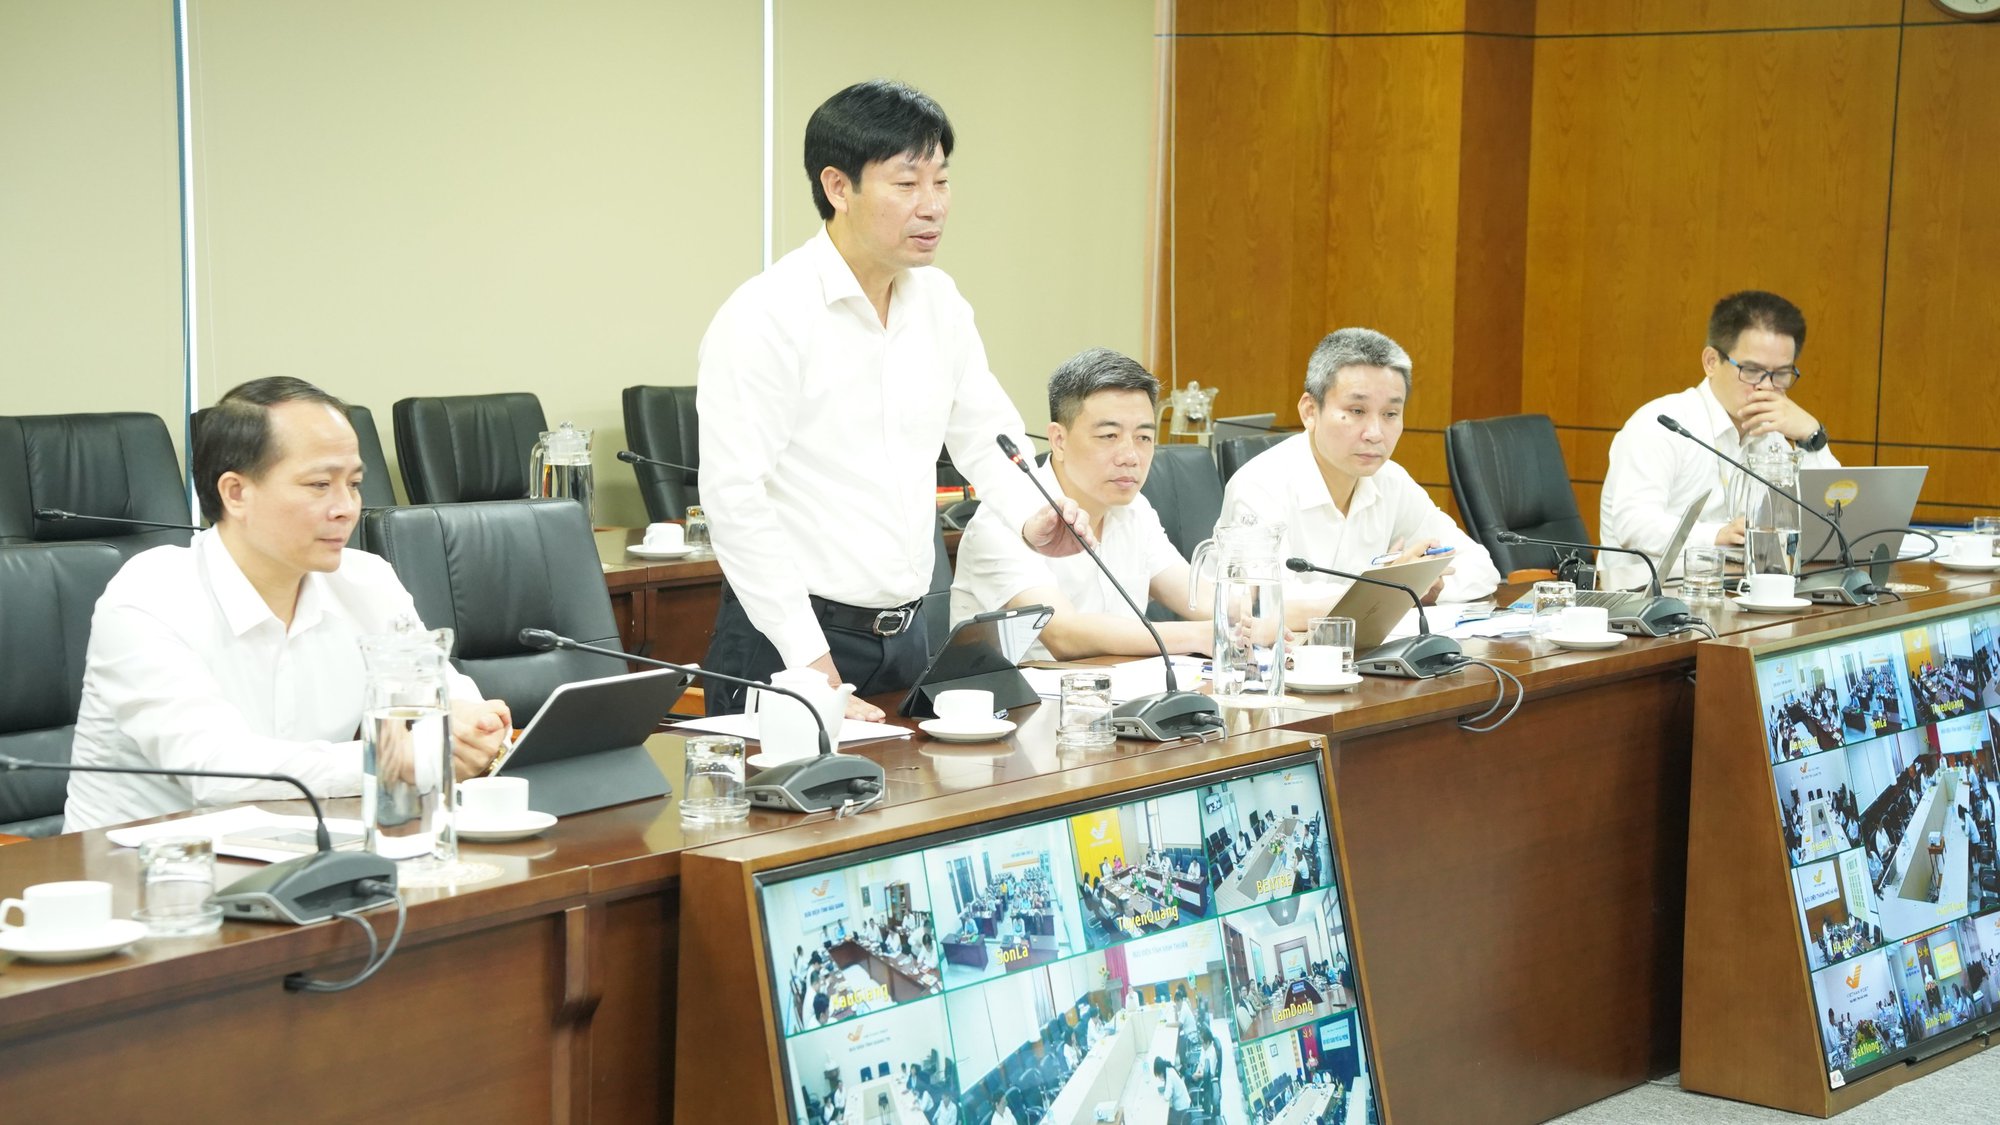  Hội Nông dân Việt Nam, Tổng công ty Bưu điện Việt Nam sơ kết 6 tháng đầu năm thực hiện kế hoạch phối hợp - Ảnh 3.